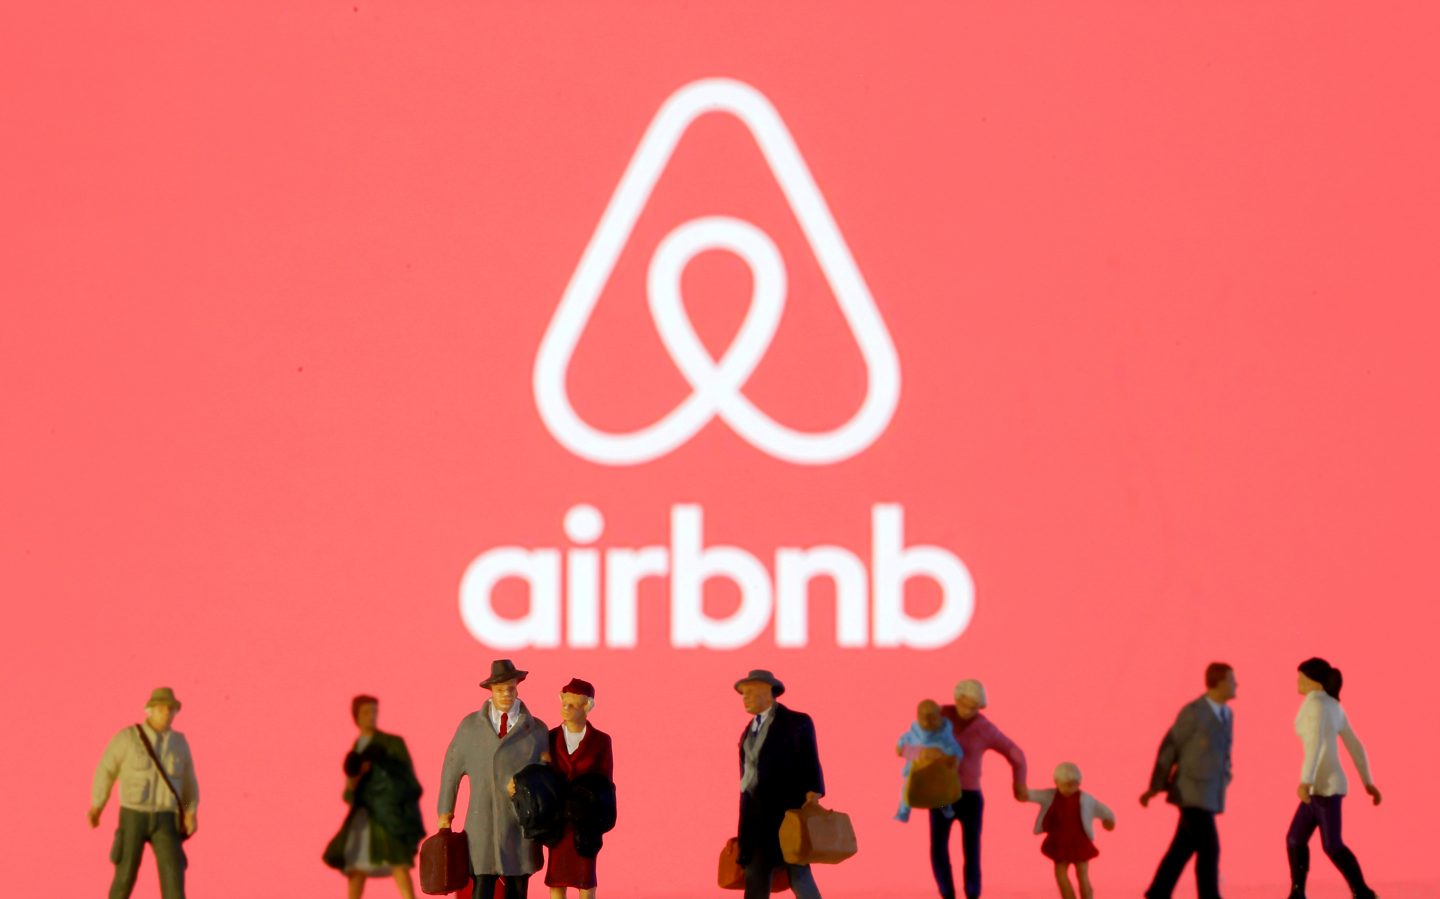 Como o airbnb teve o melhor ipo de 2020 em plena pandemia